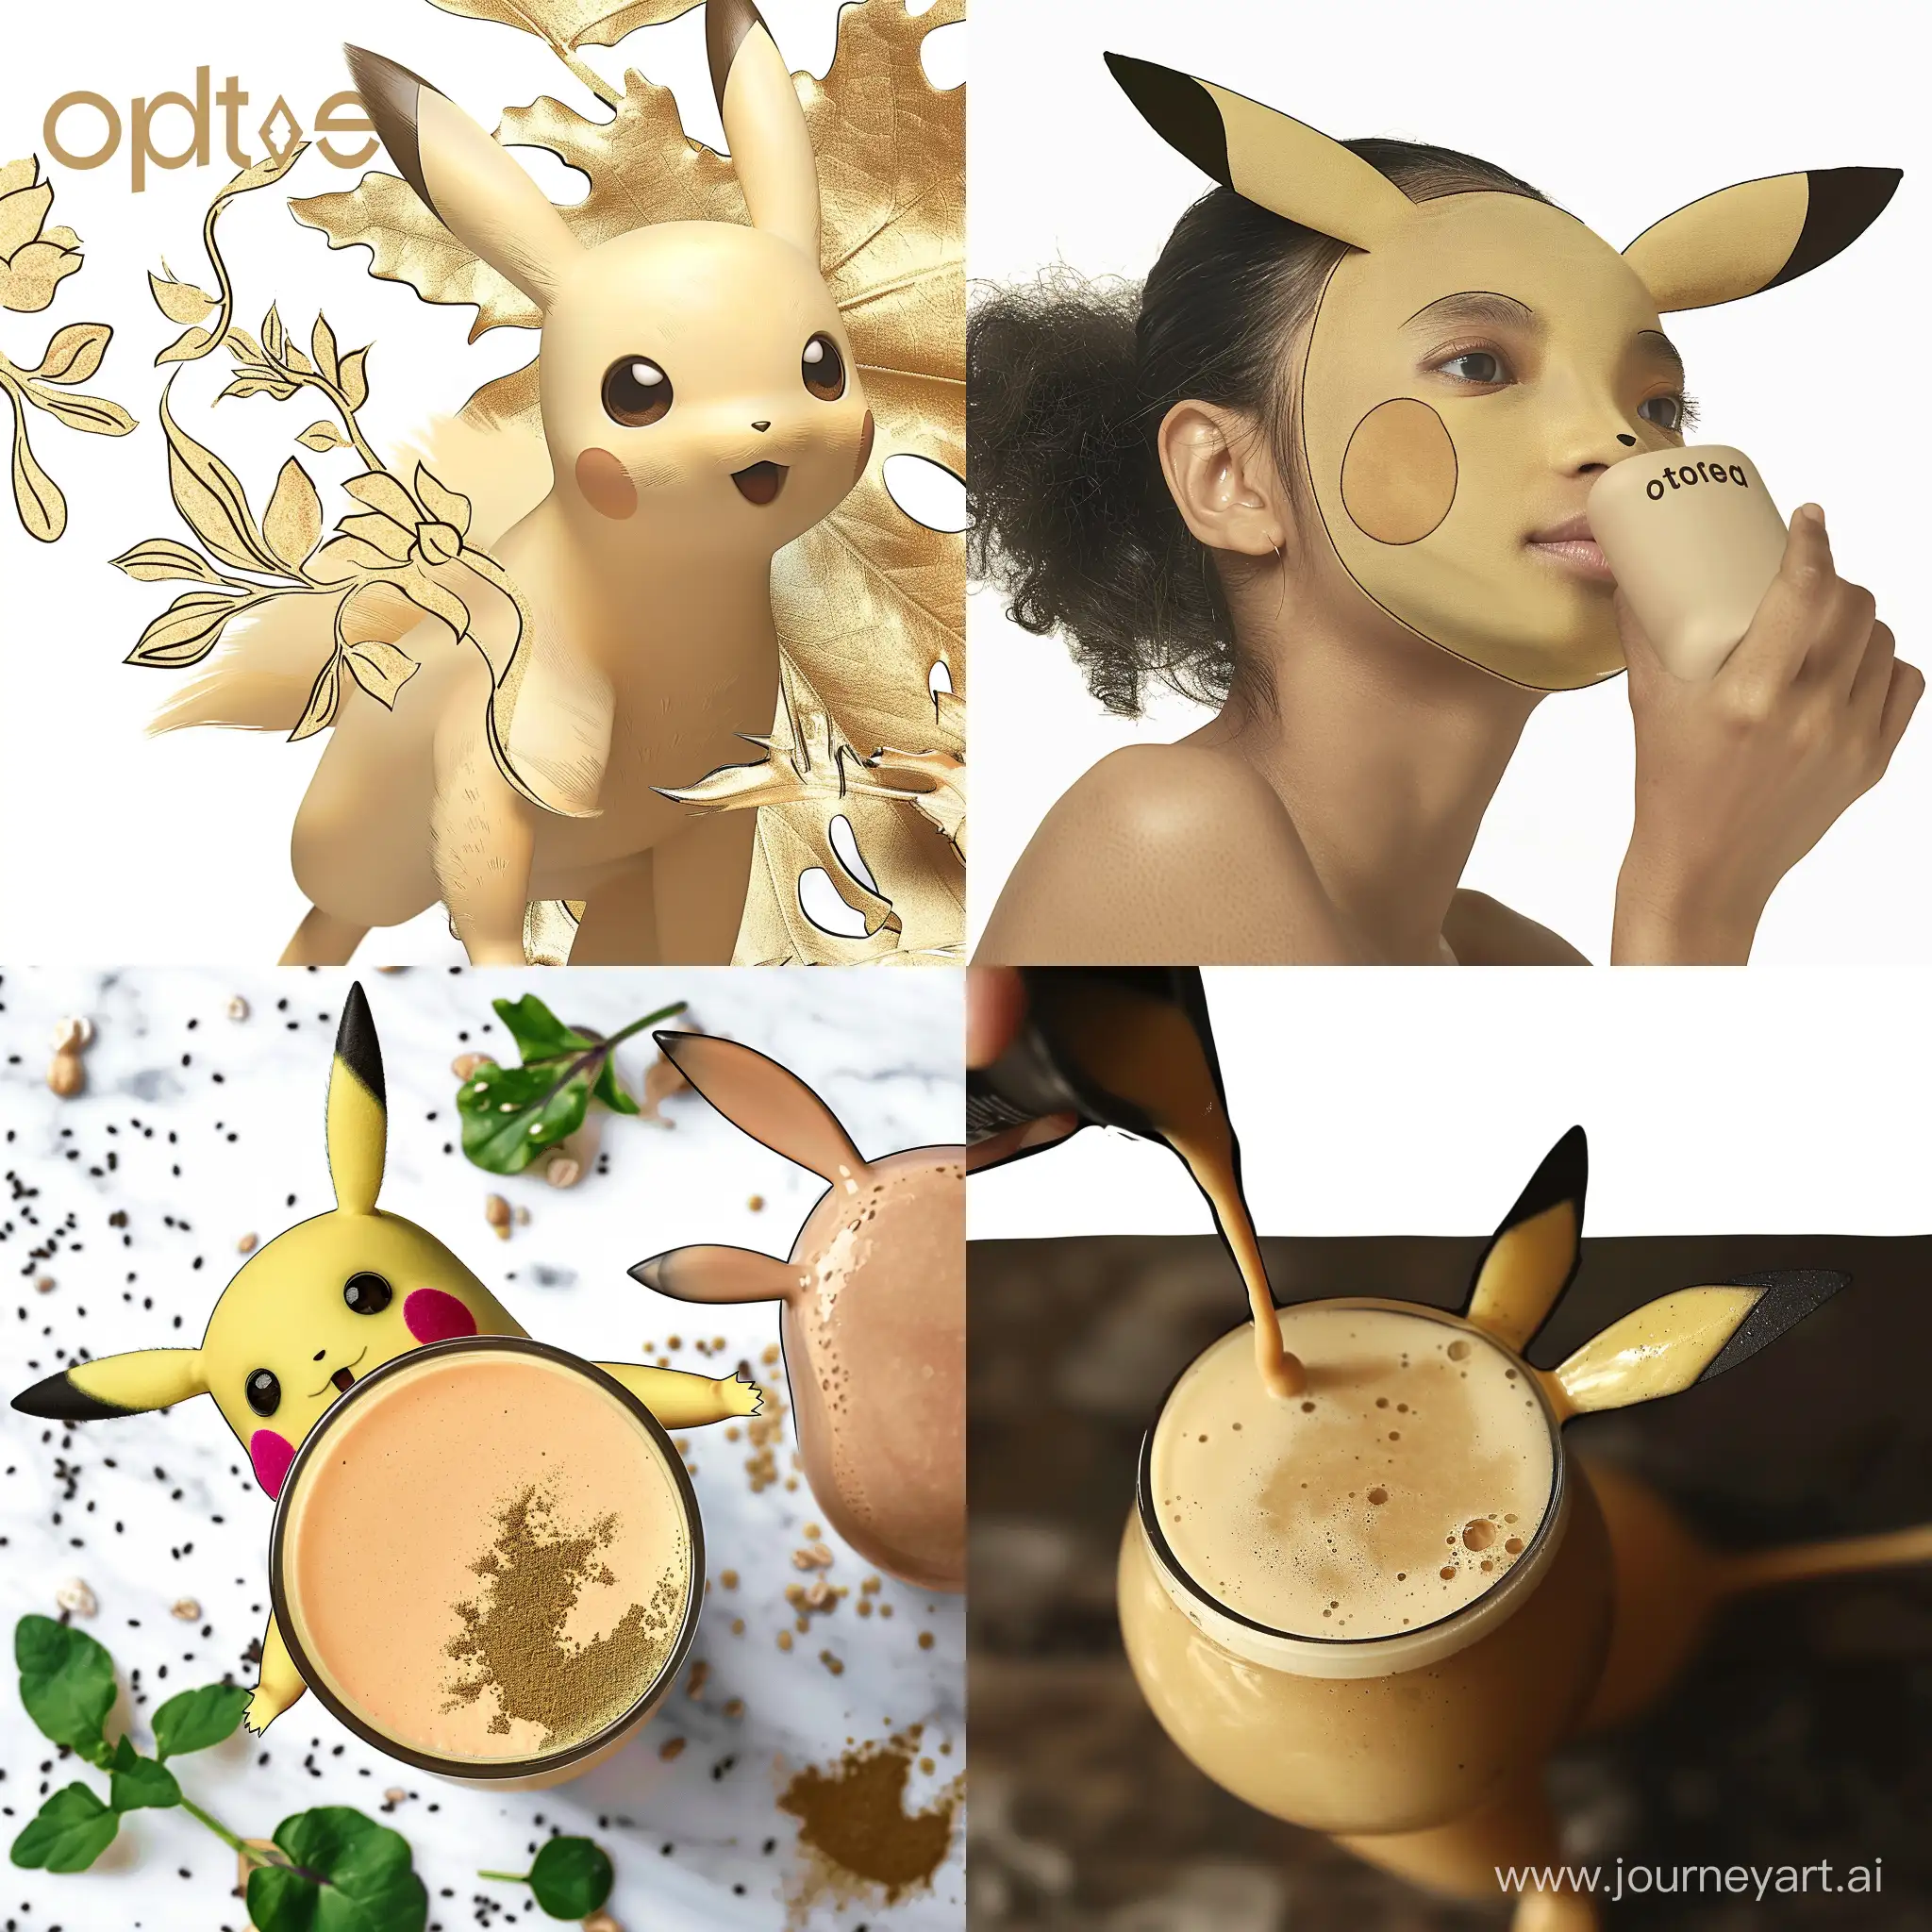 Playful-Pikachu-and-Raichu-Artwork-Collage